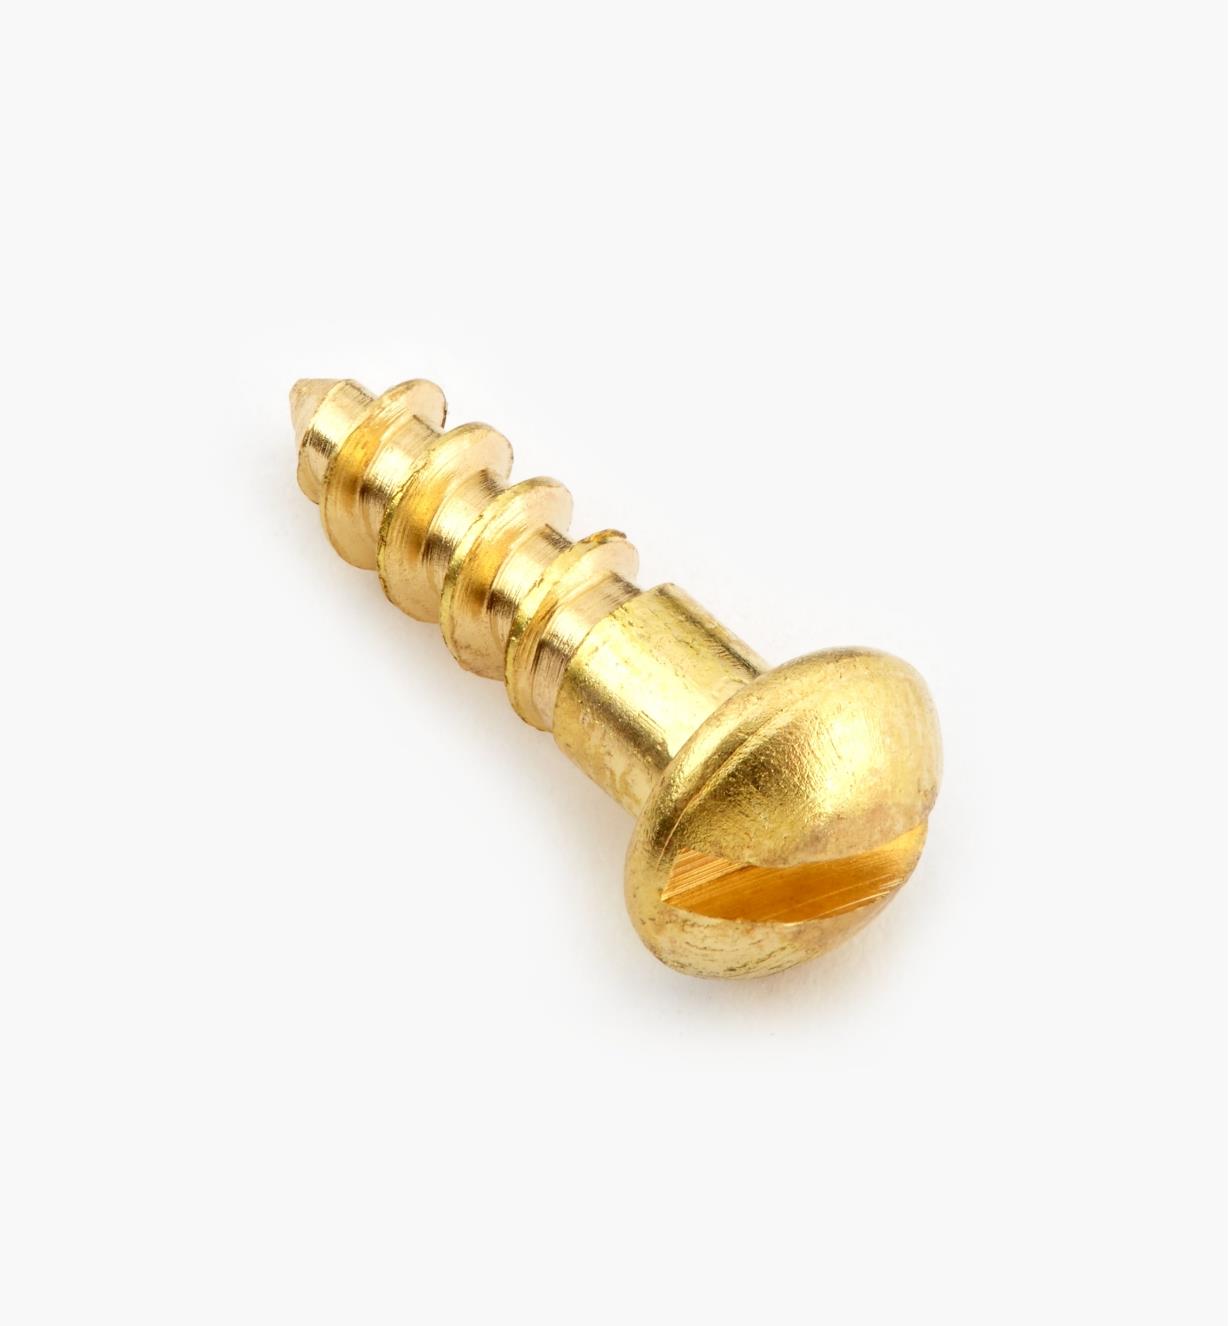 91Y0603 - #6, 1/2" Round Brass Screws, pkg. of 100